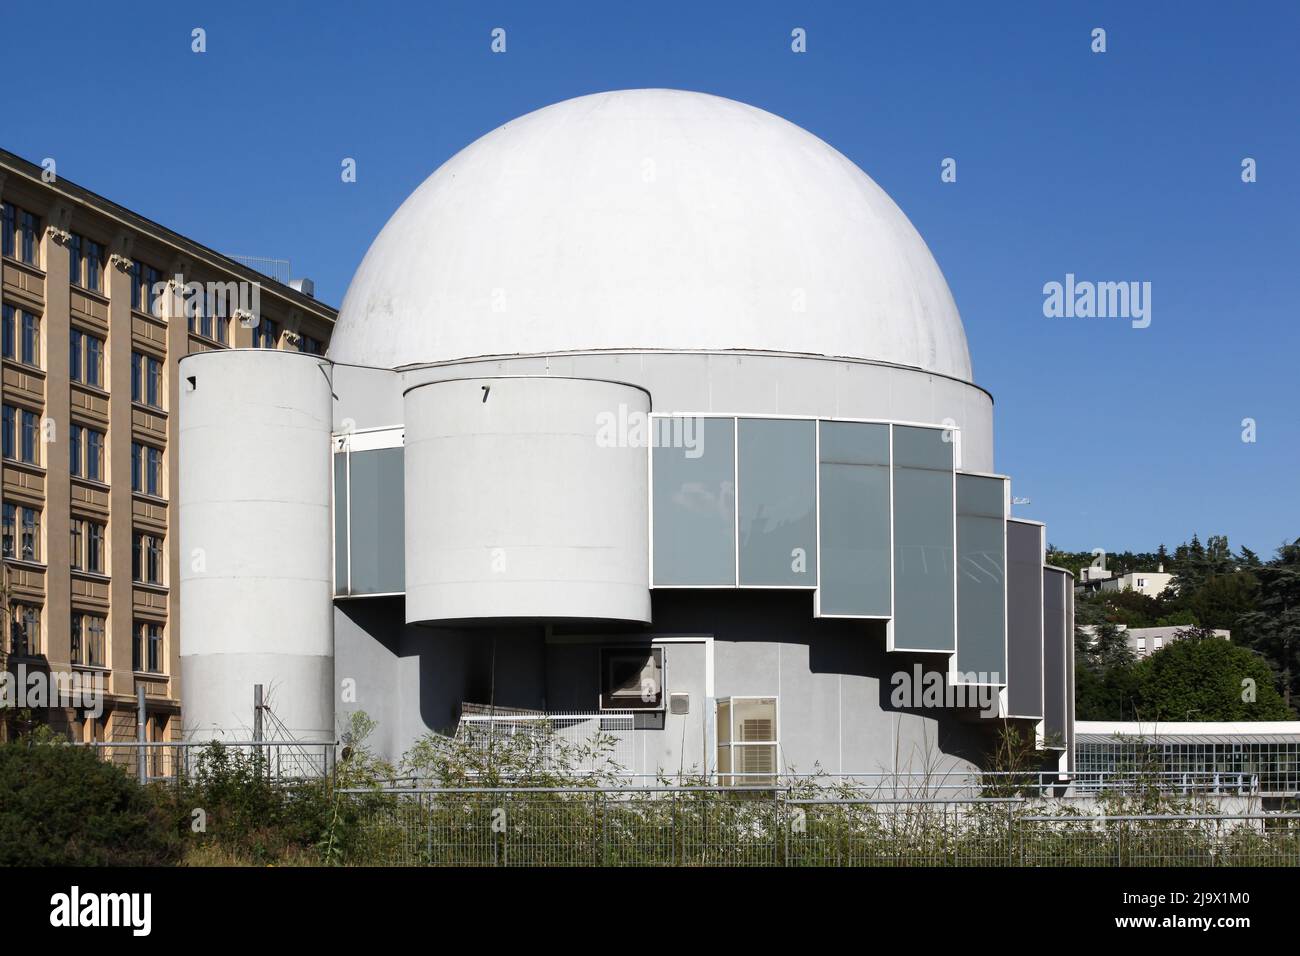 Saint-Etienne, France - June 21, 2020: Planetarium in Saint-Etienne, France Stock Photo